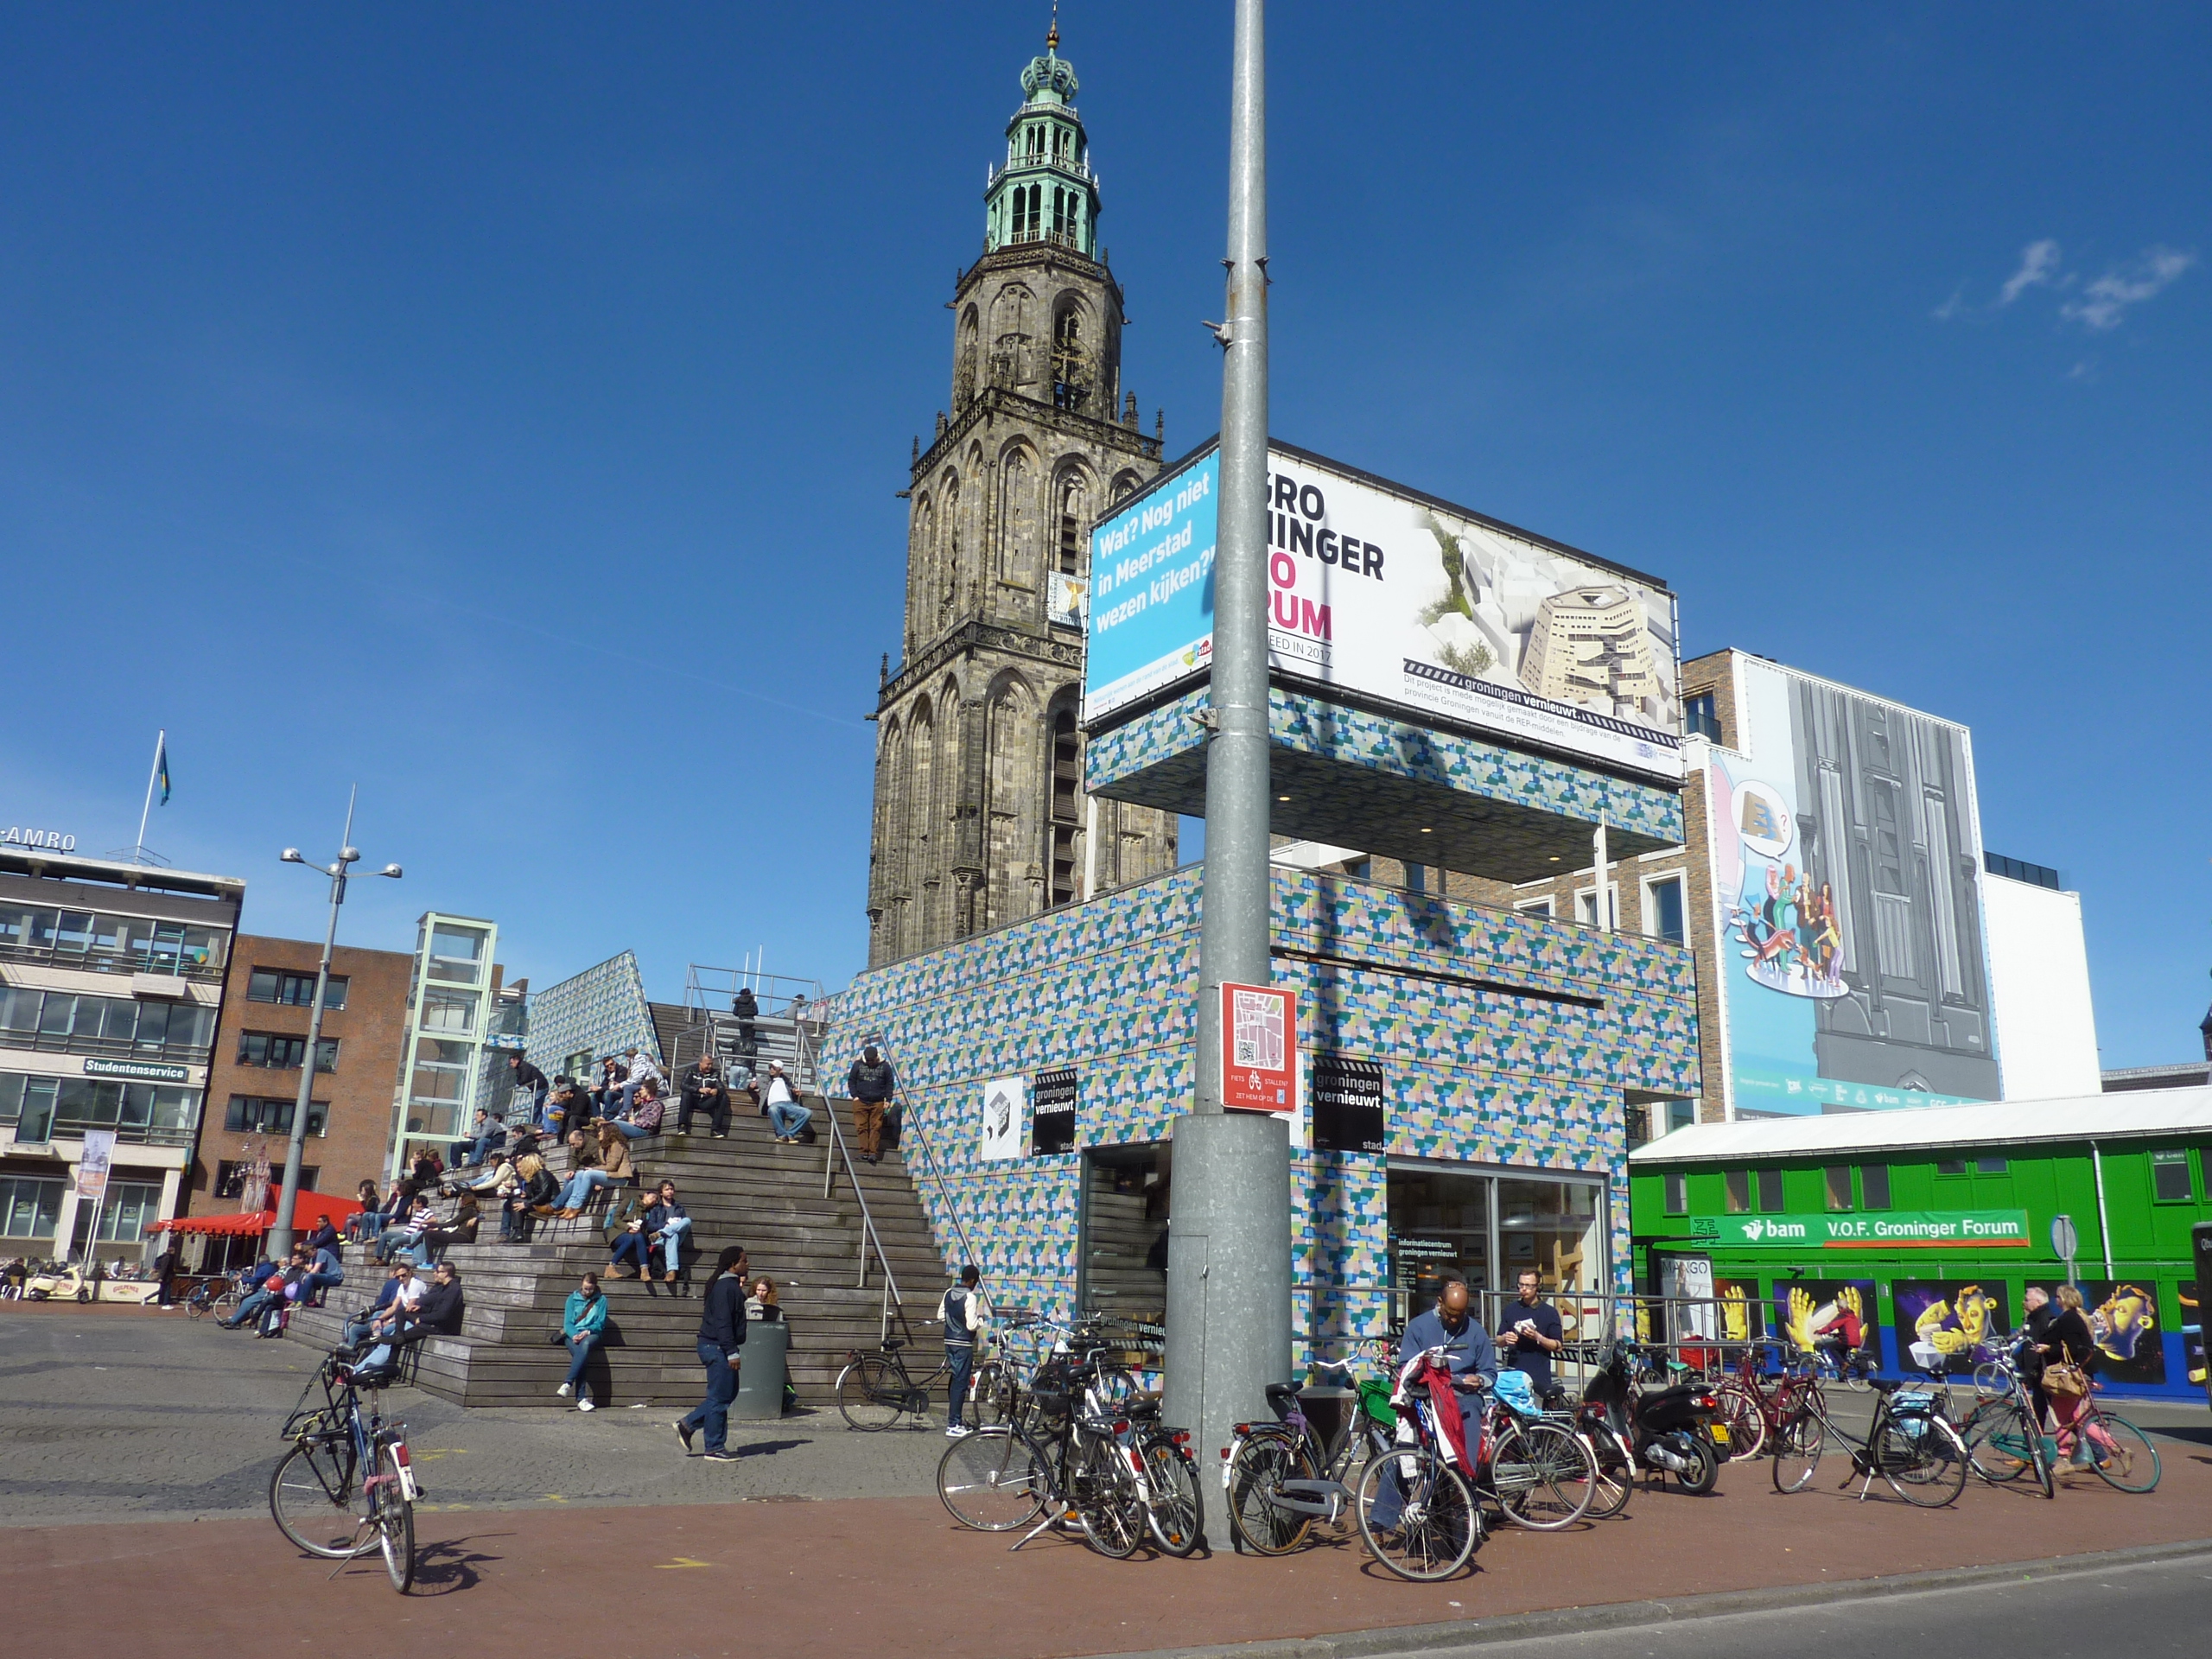 Leuke stad hoor, Groningen!